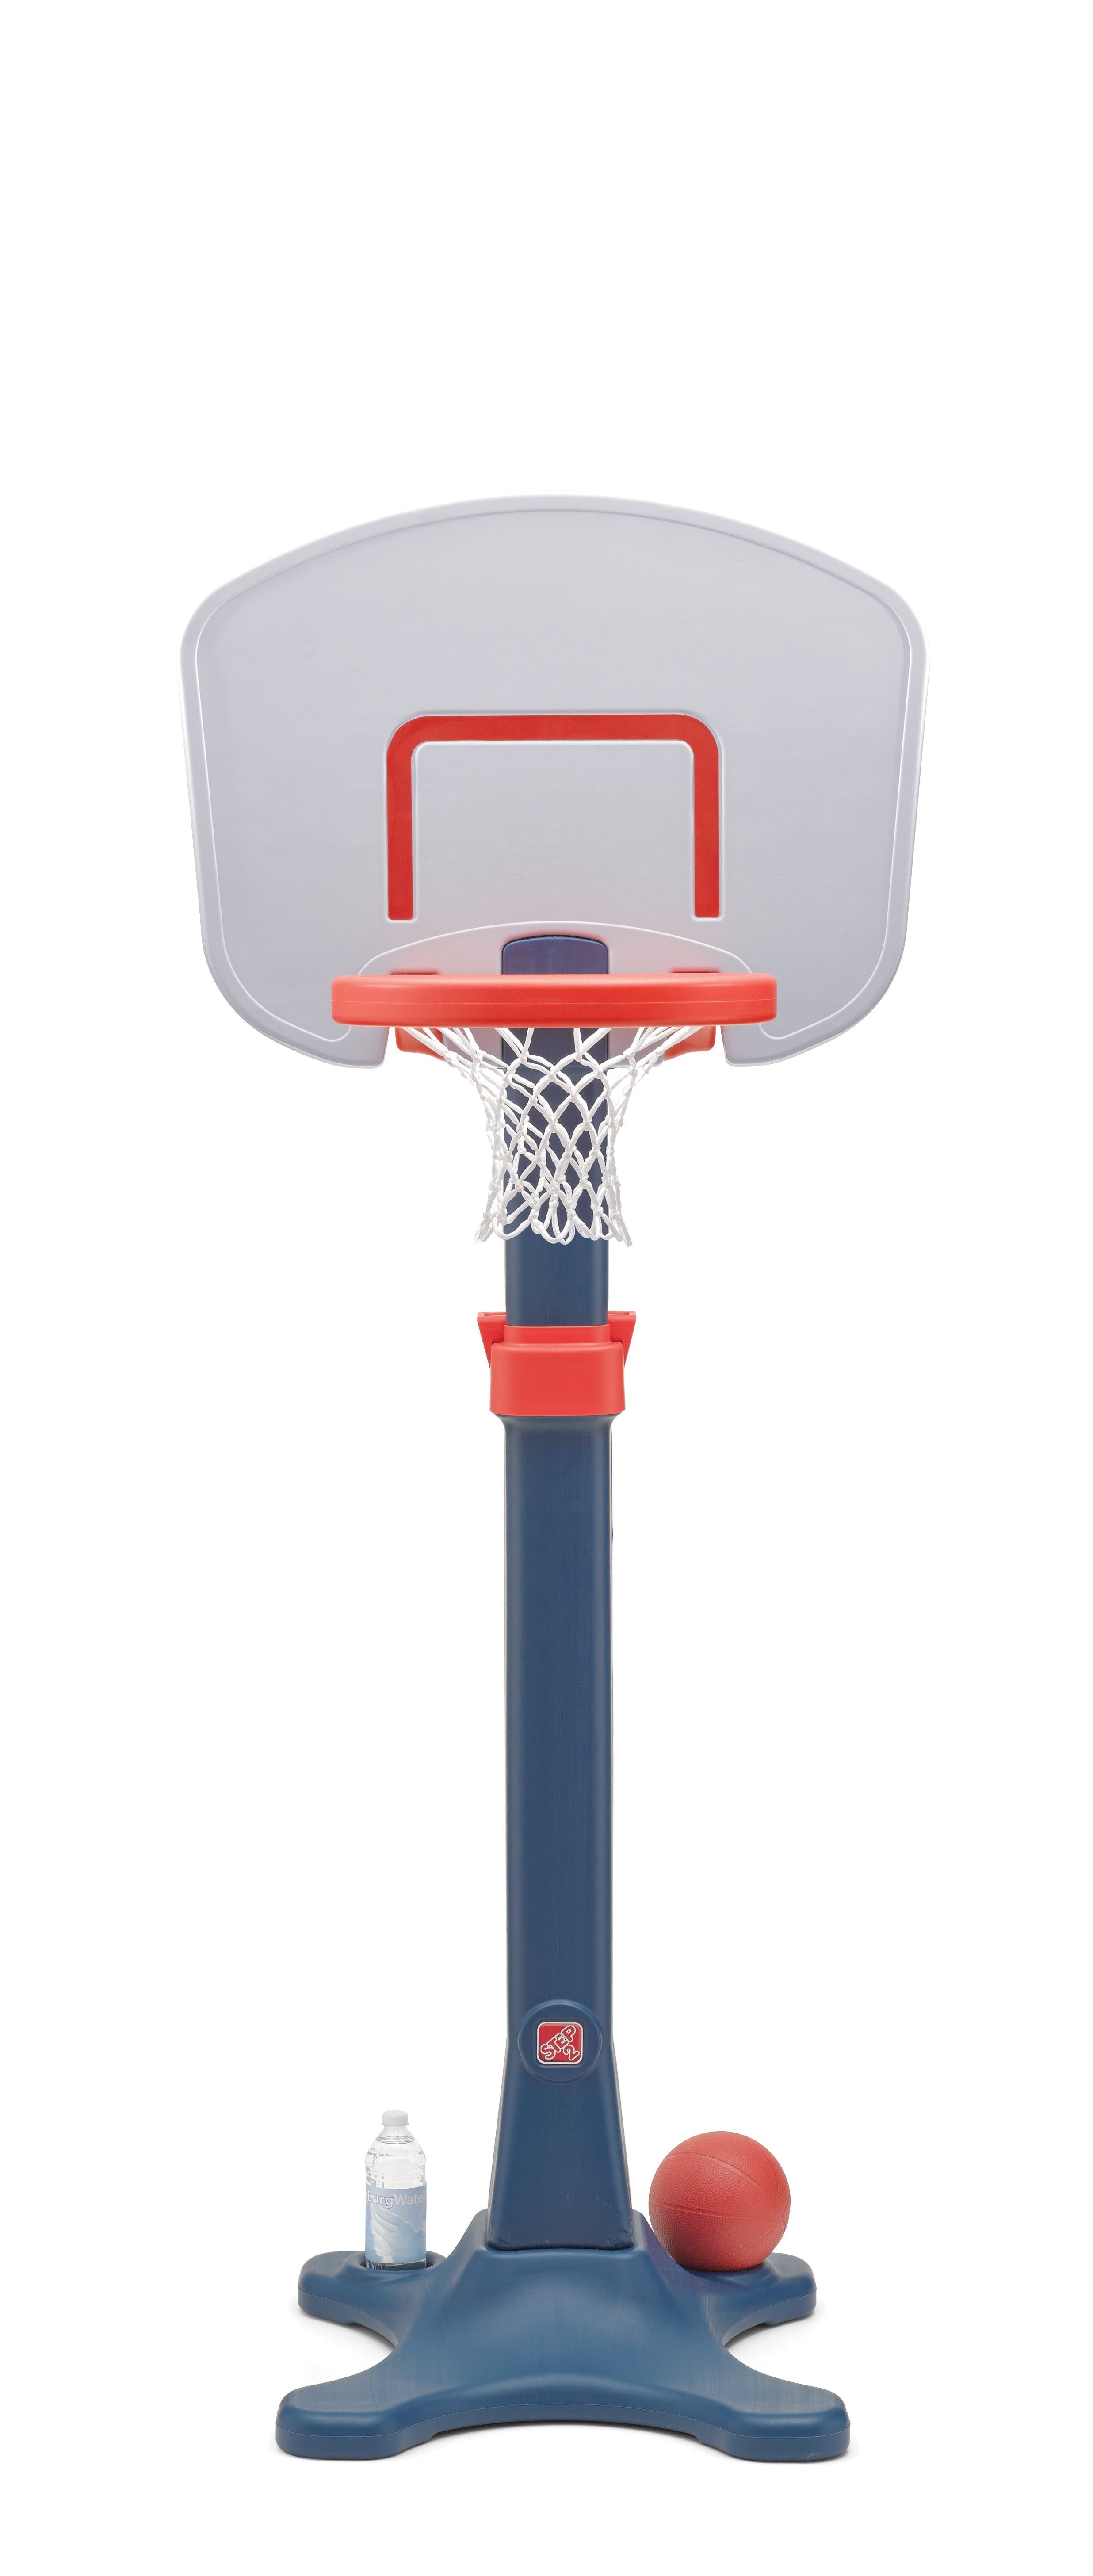  Mini canasta de baloncesto Iserlohn, para uso sobre la puerta.  Incluye 2 balones de lanzamiento silenciosos y una canasta de baloncesto  pro-mini, bomba de aire, diseñada para el hogar o la